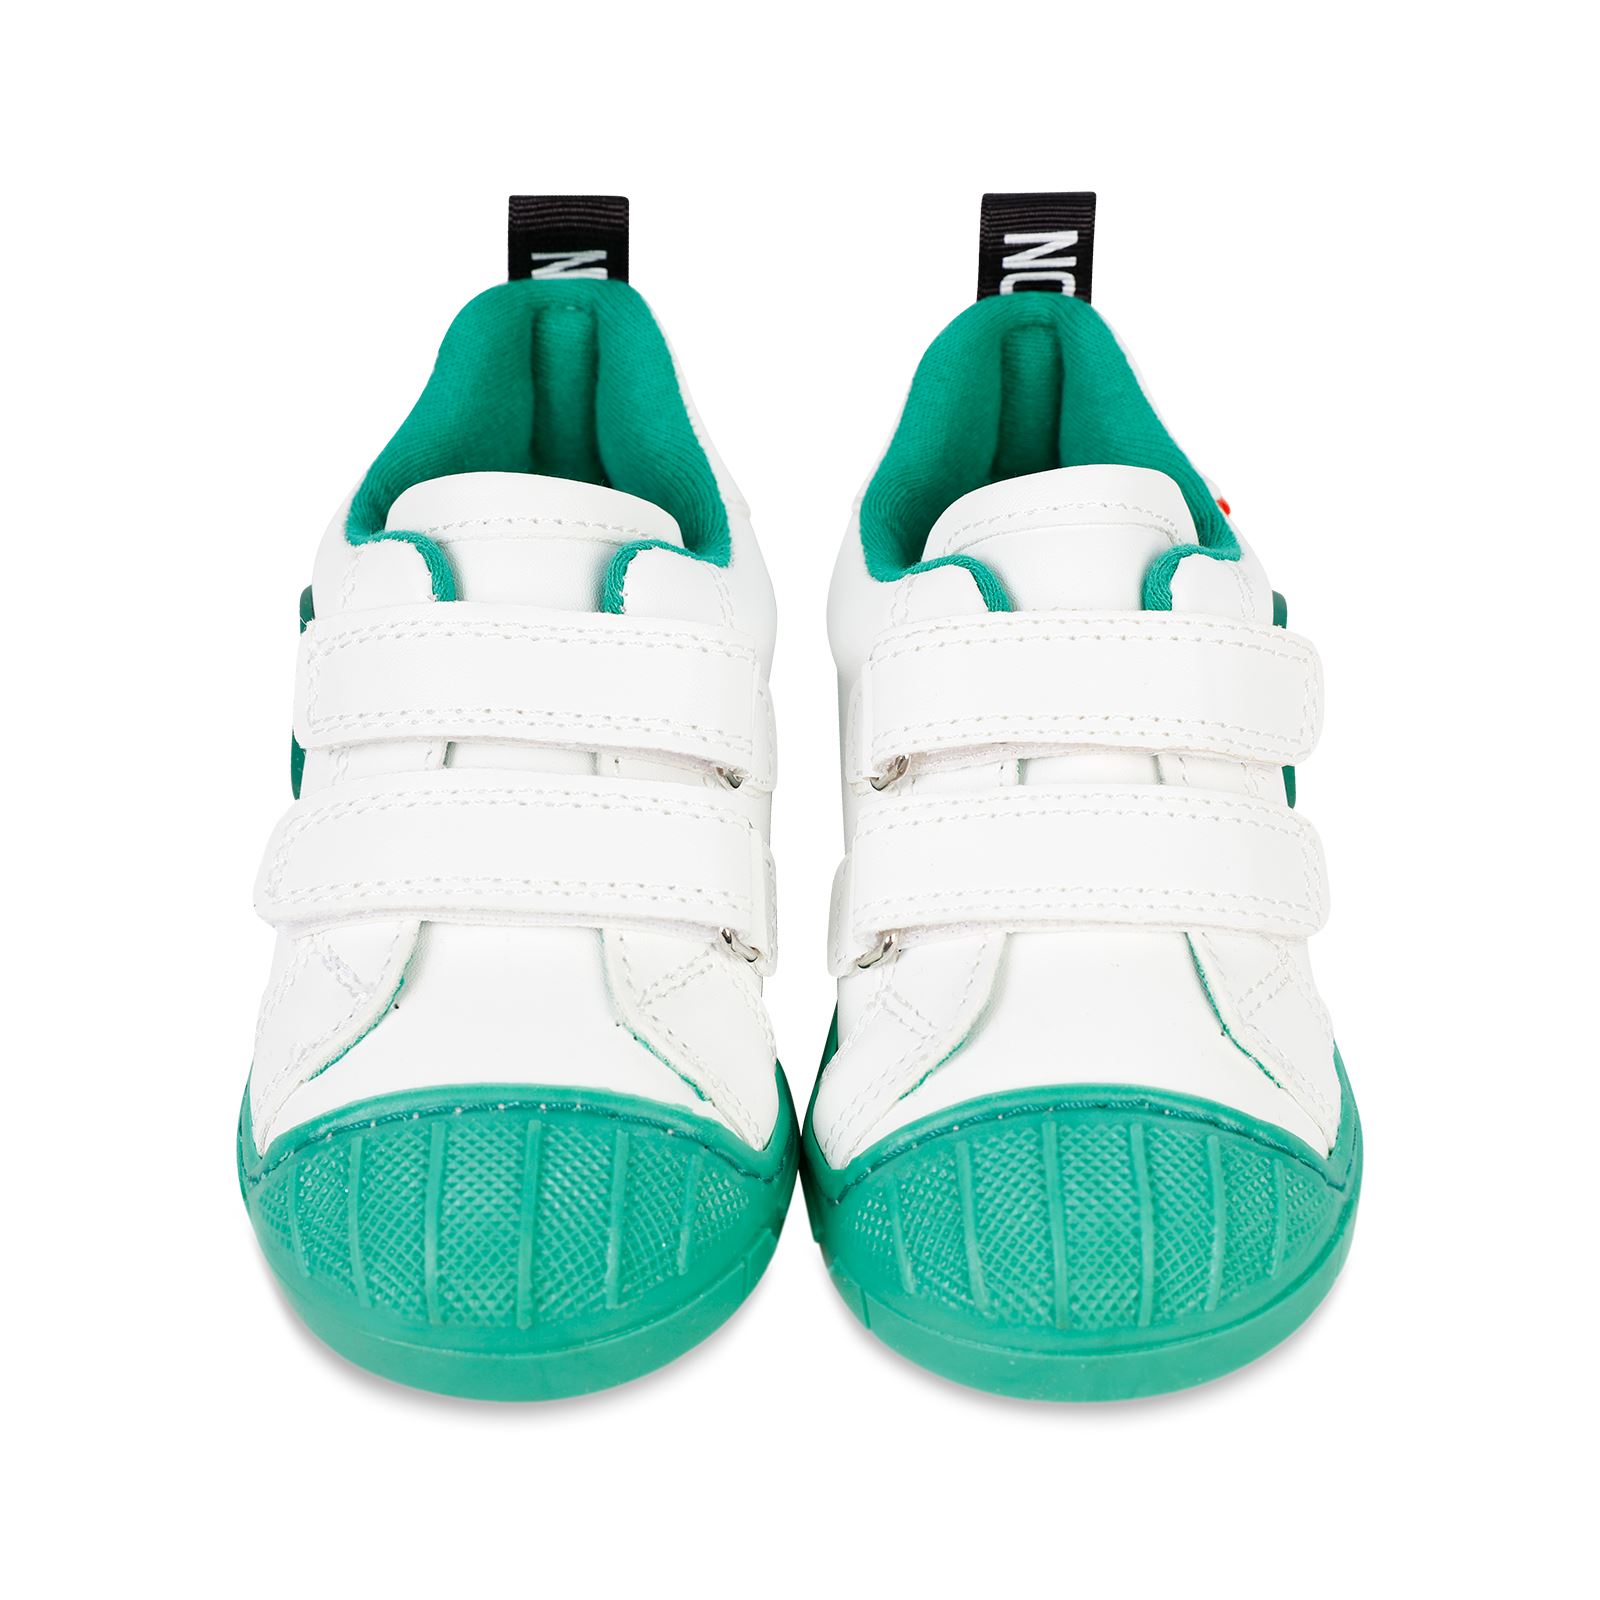 Civil Erkek Çocuk Spor Ayakkabı 21-25 Numara Beyaz-Yeşil